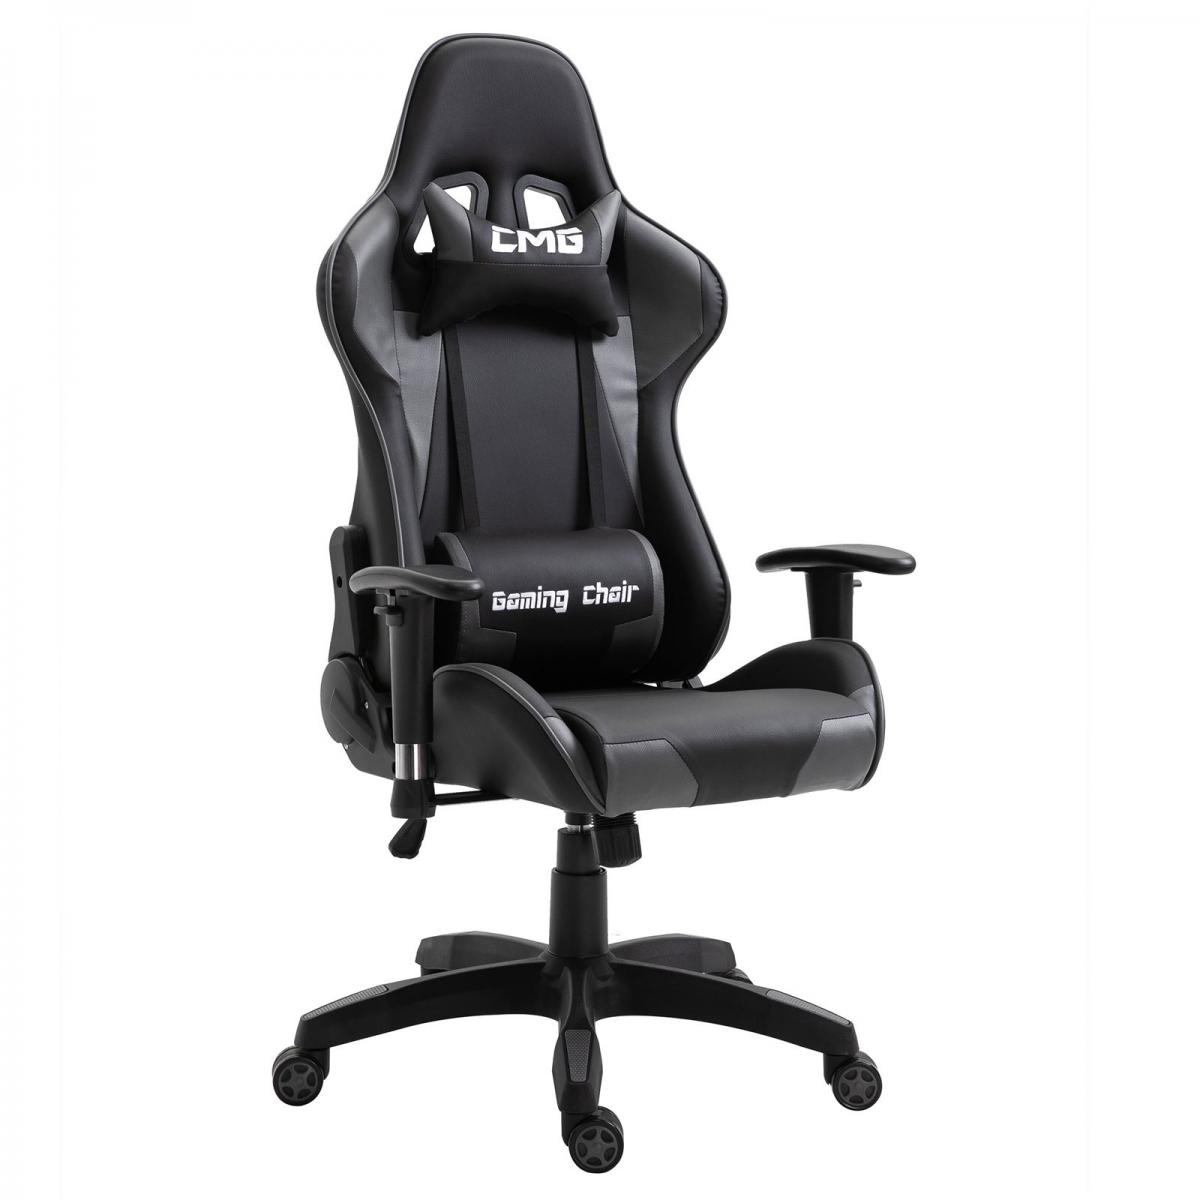 Idimex - Chaise de bureau GAMING, revêtement synthétique noir et gris - Chaise gamer